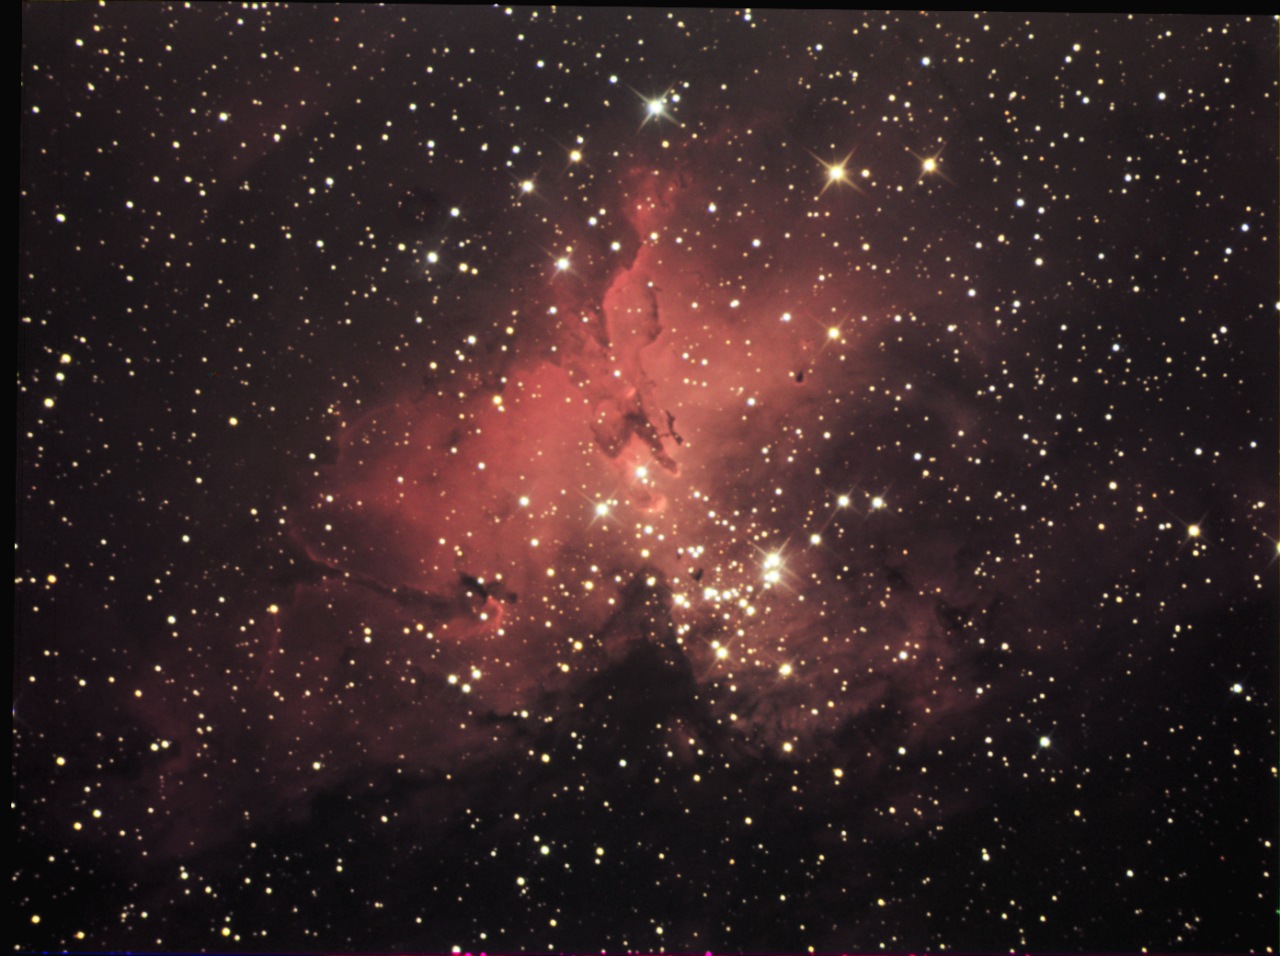 Image de «Chamois» (son pseudo sur le forum) en 80 minutes de pose avec une caméra CCD et un télescope de 200 mm.